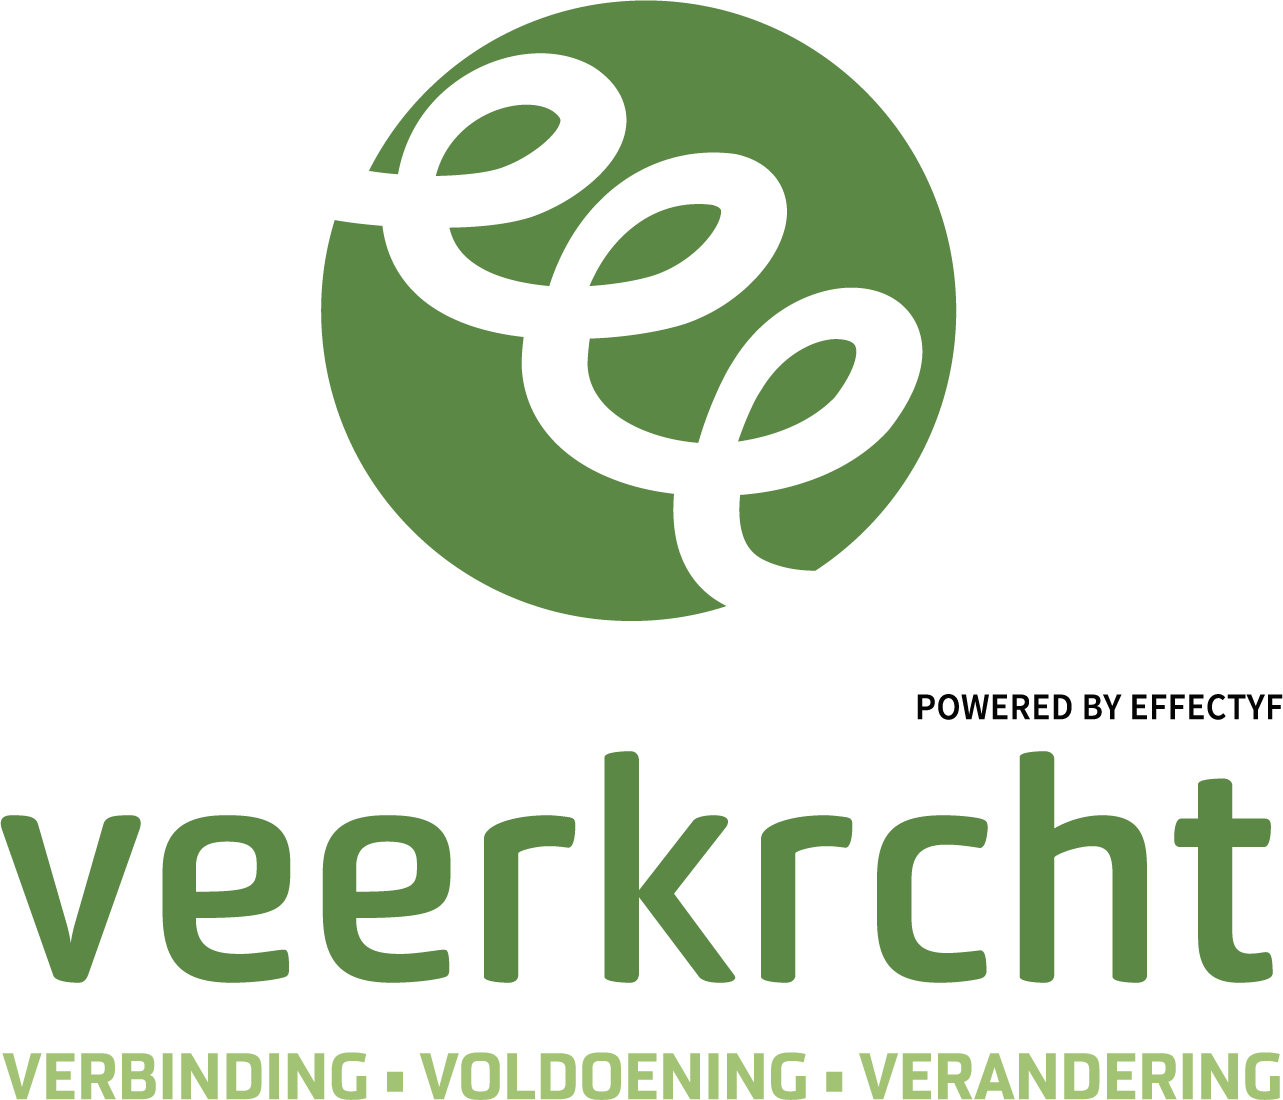 veerkrcht-logo-powered-by-1-